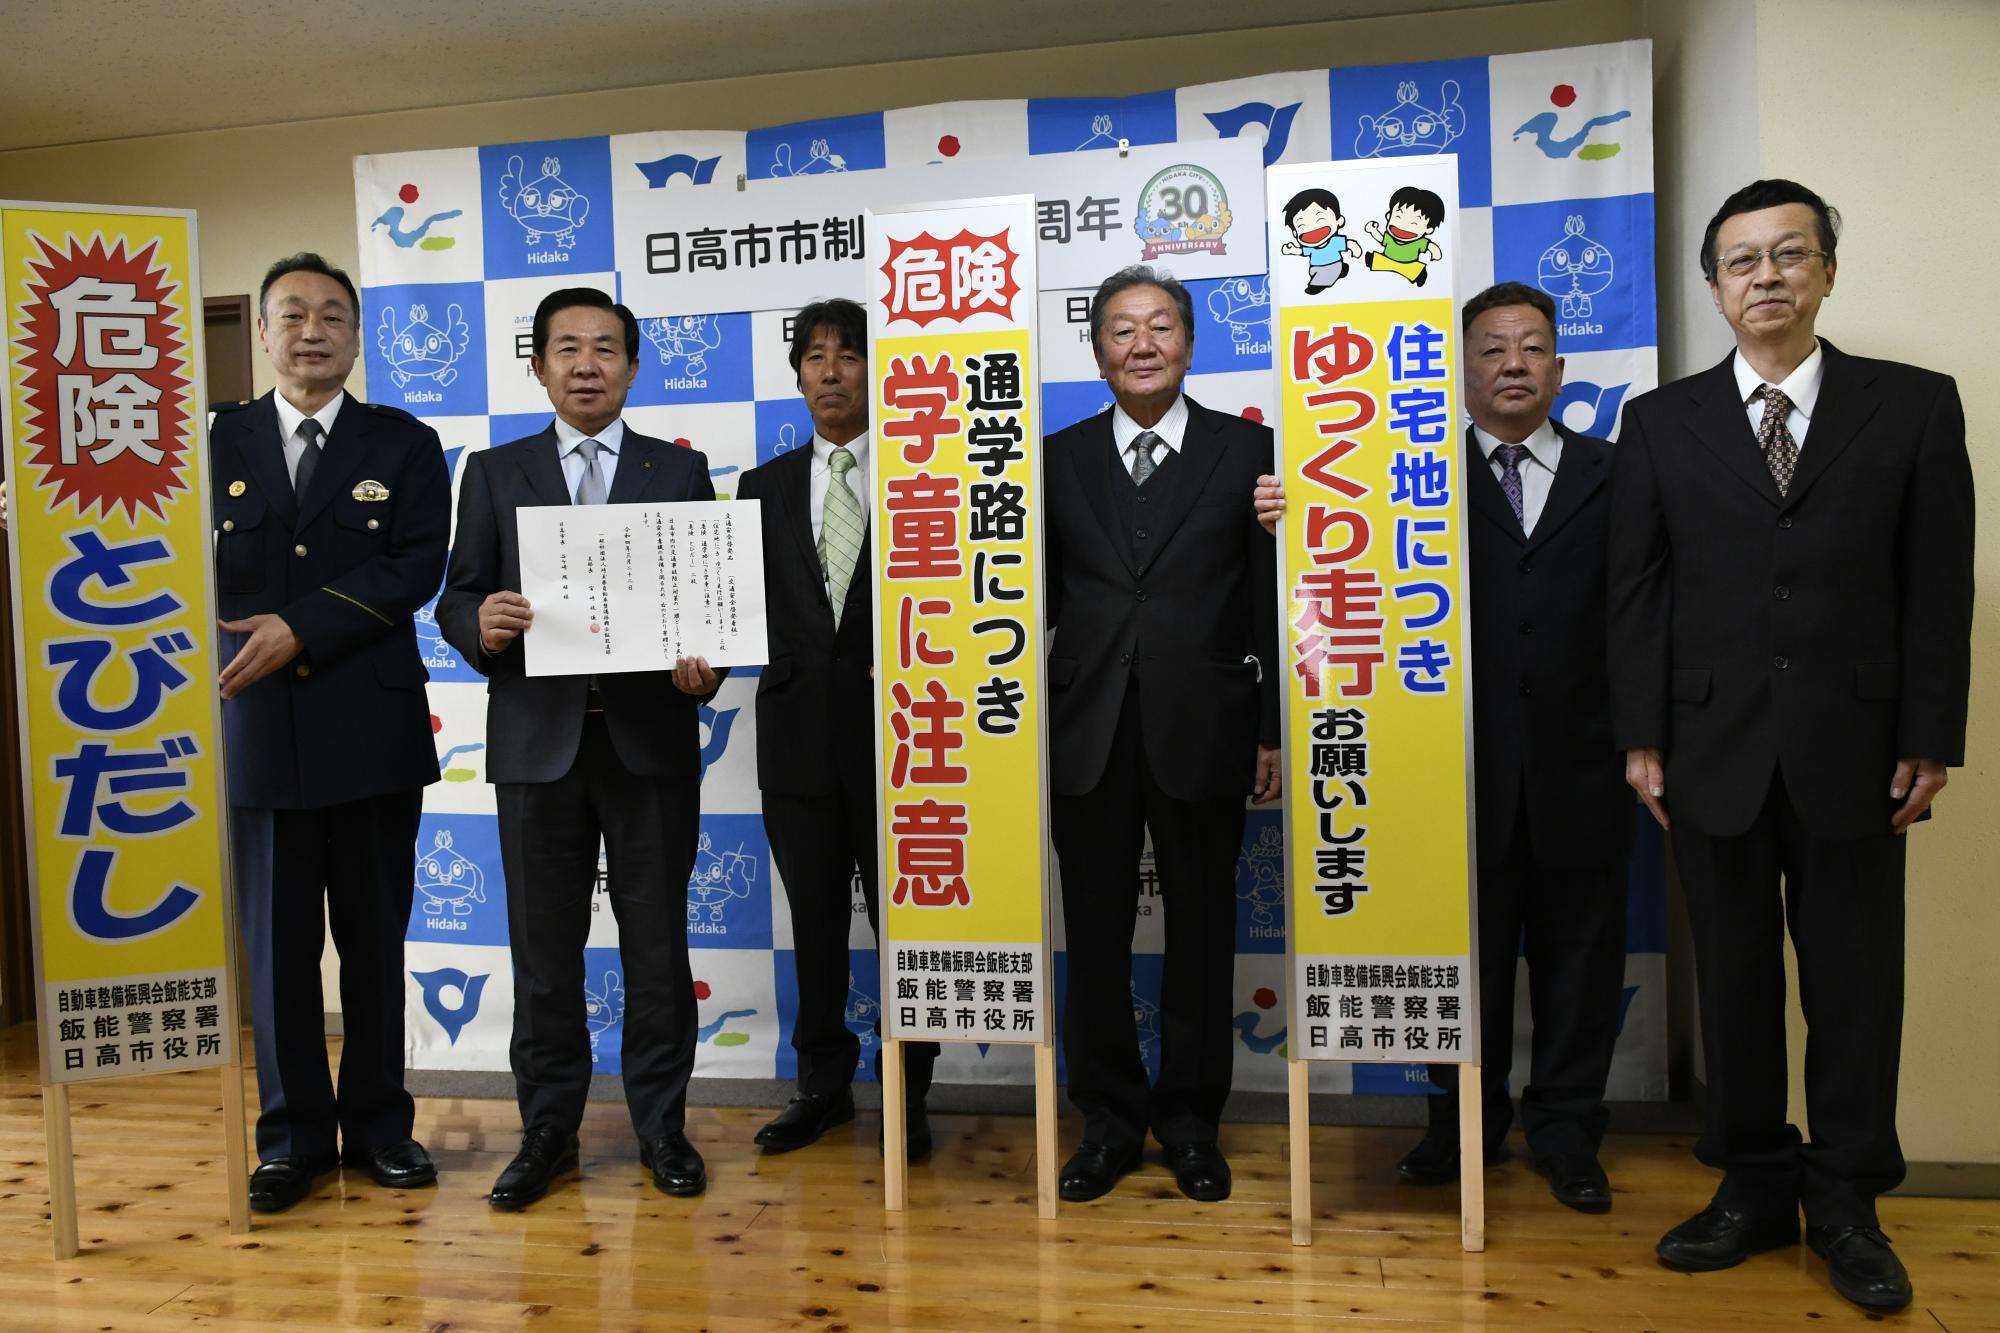 埼玉県自動車整備振興会飯能支部の皆さんと市長の記念写真